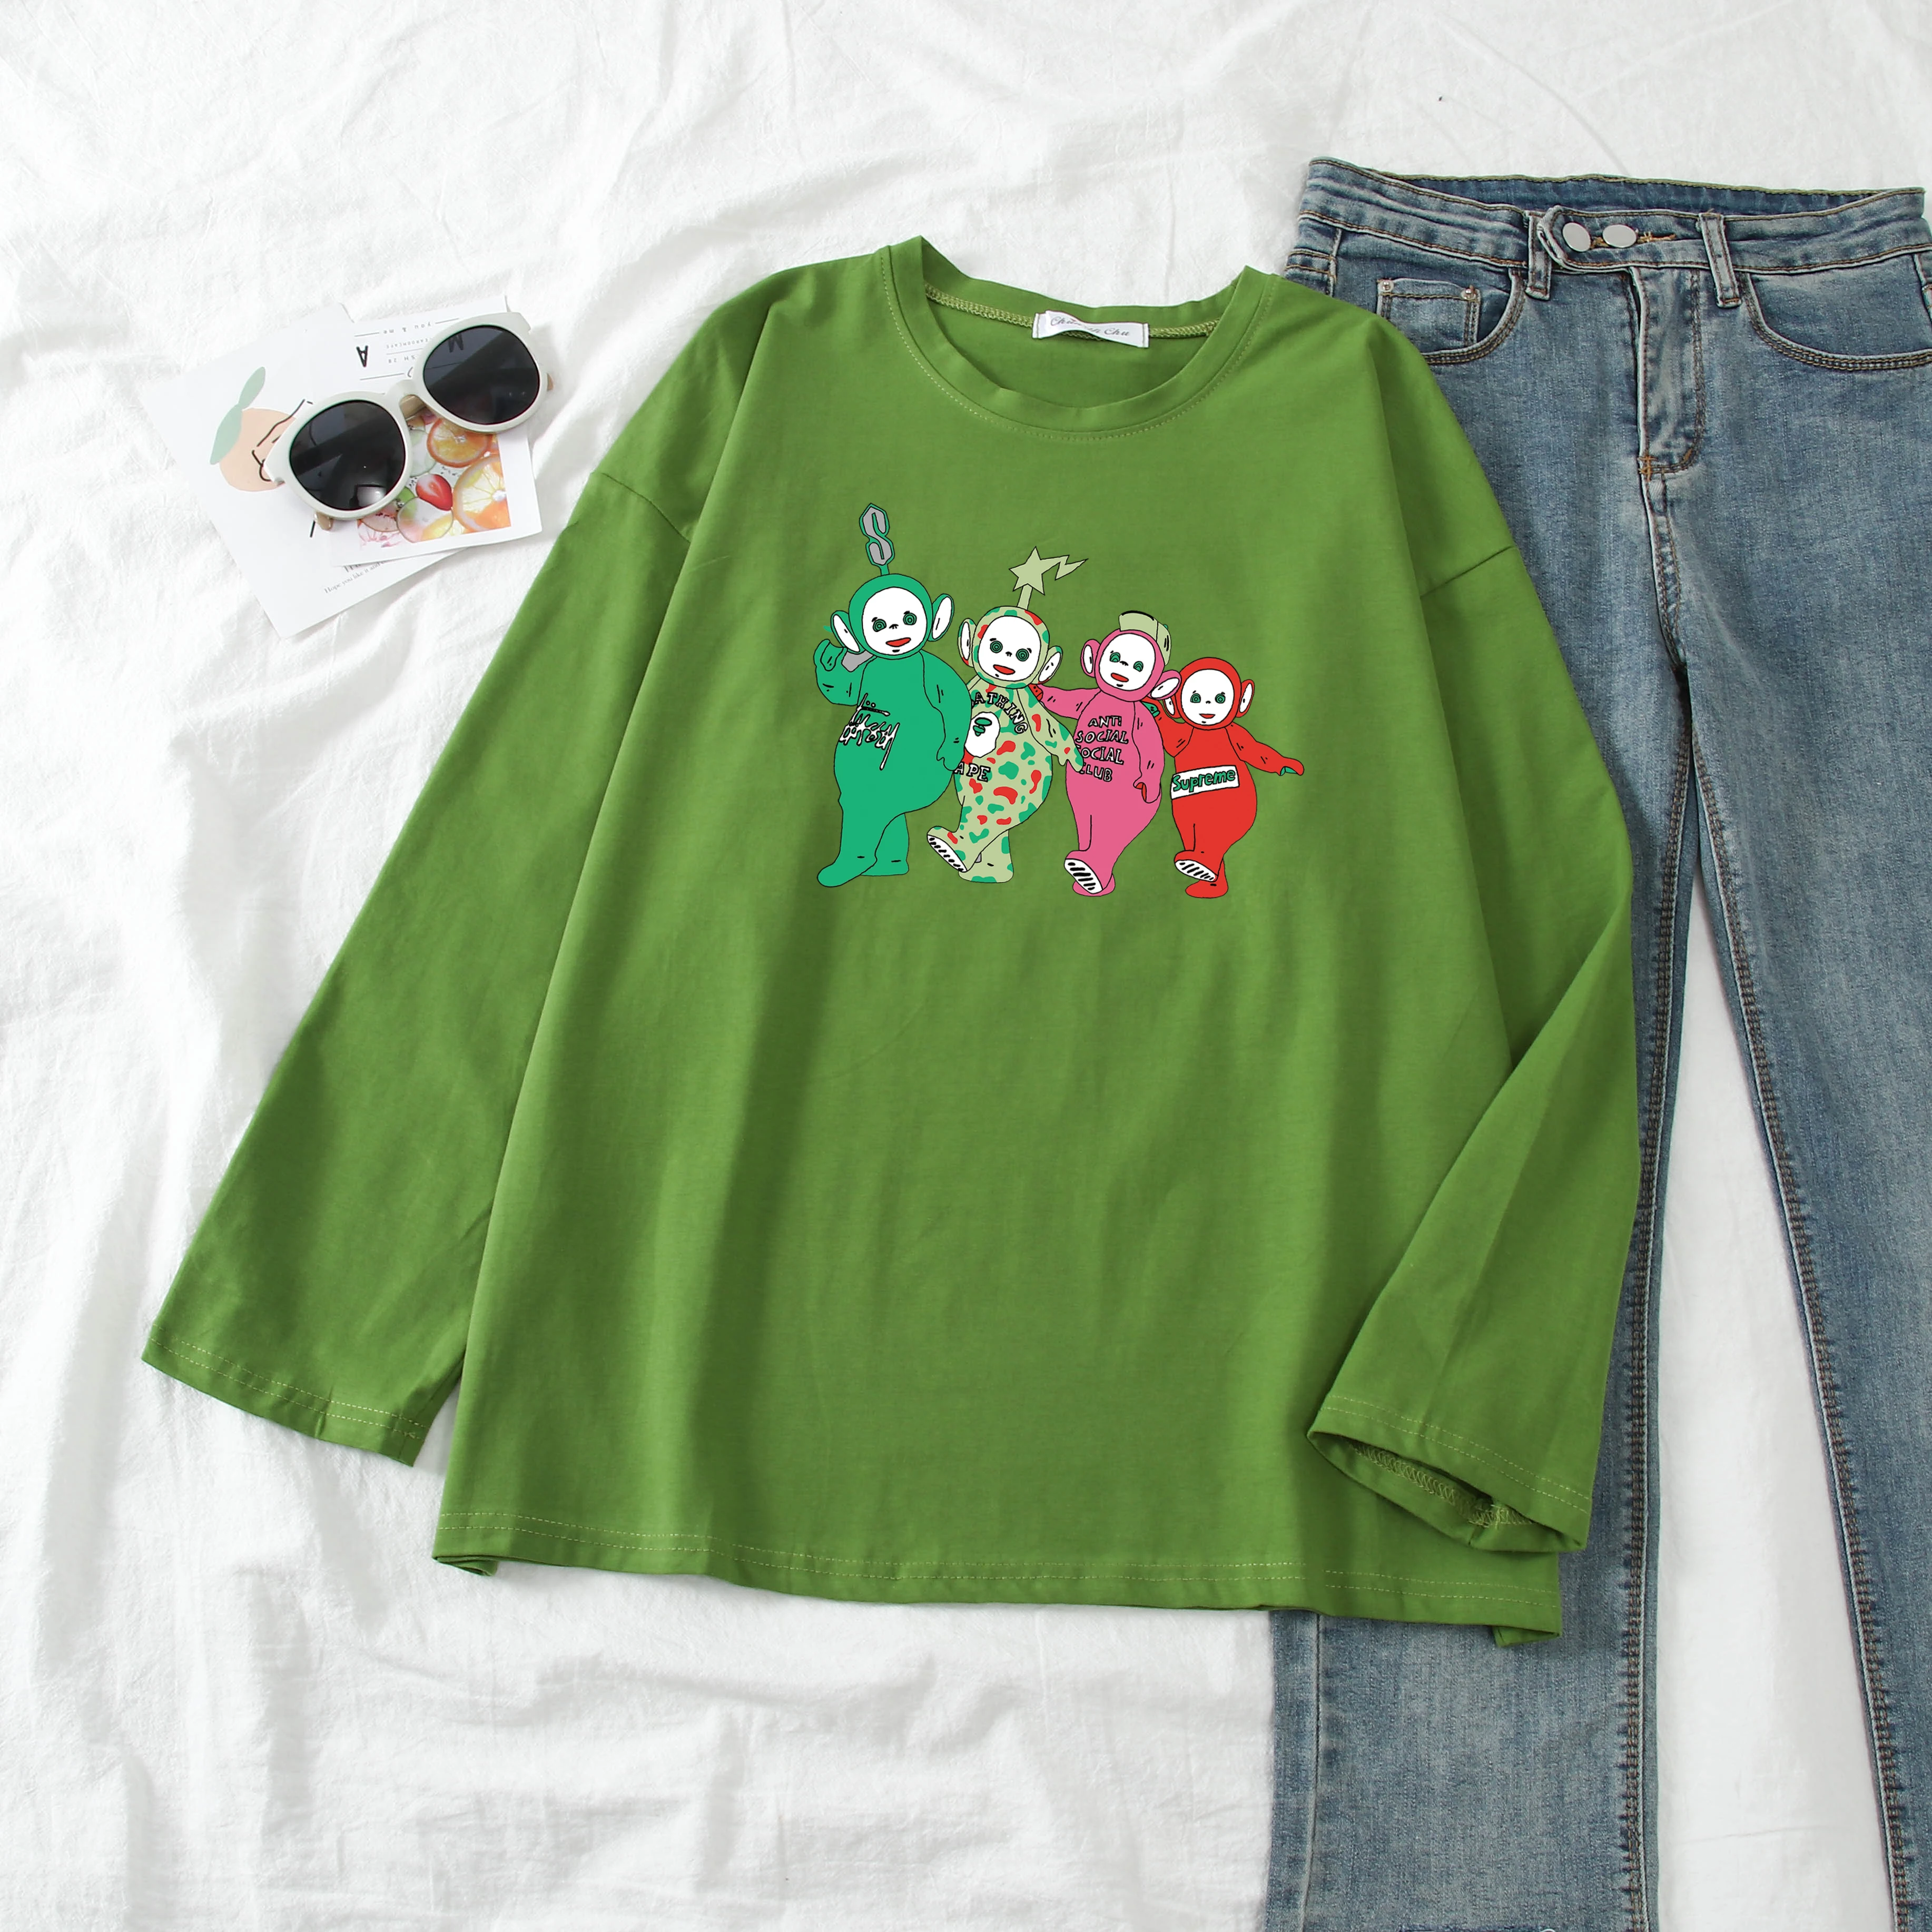 Женская забавная футболка с телепузиками, летняя, осенняя, полностью хлопковая, с принтом, Harajuku, Корейская одежда, camiseta mujer, футболка, femme, Топ